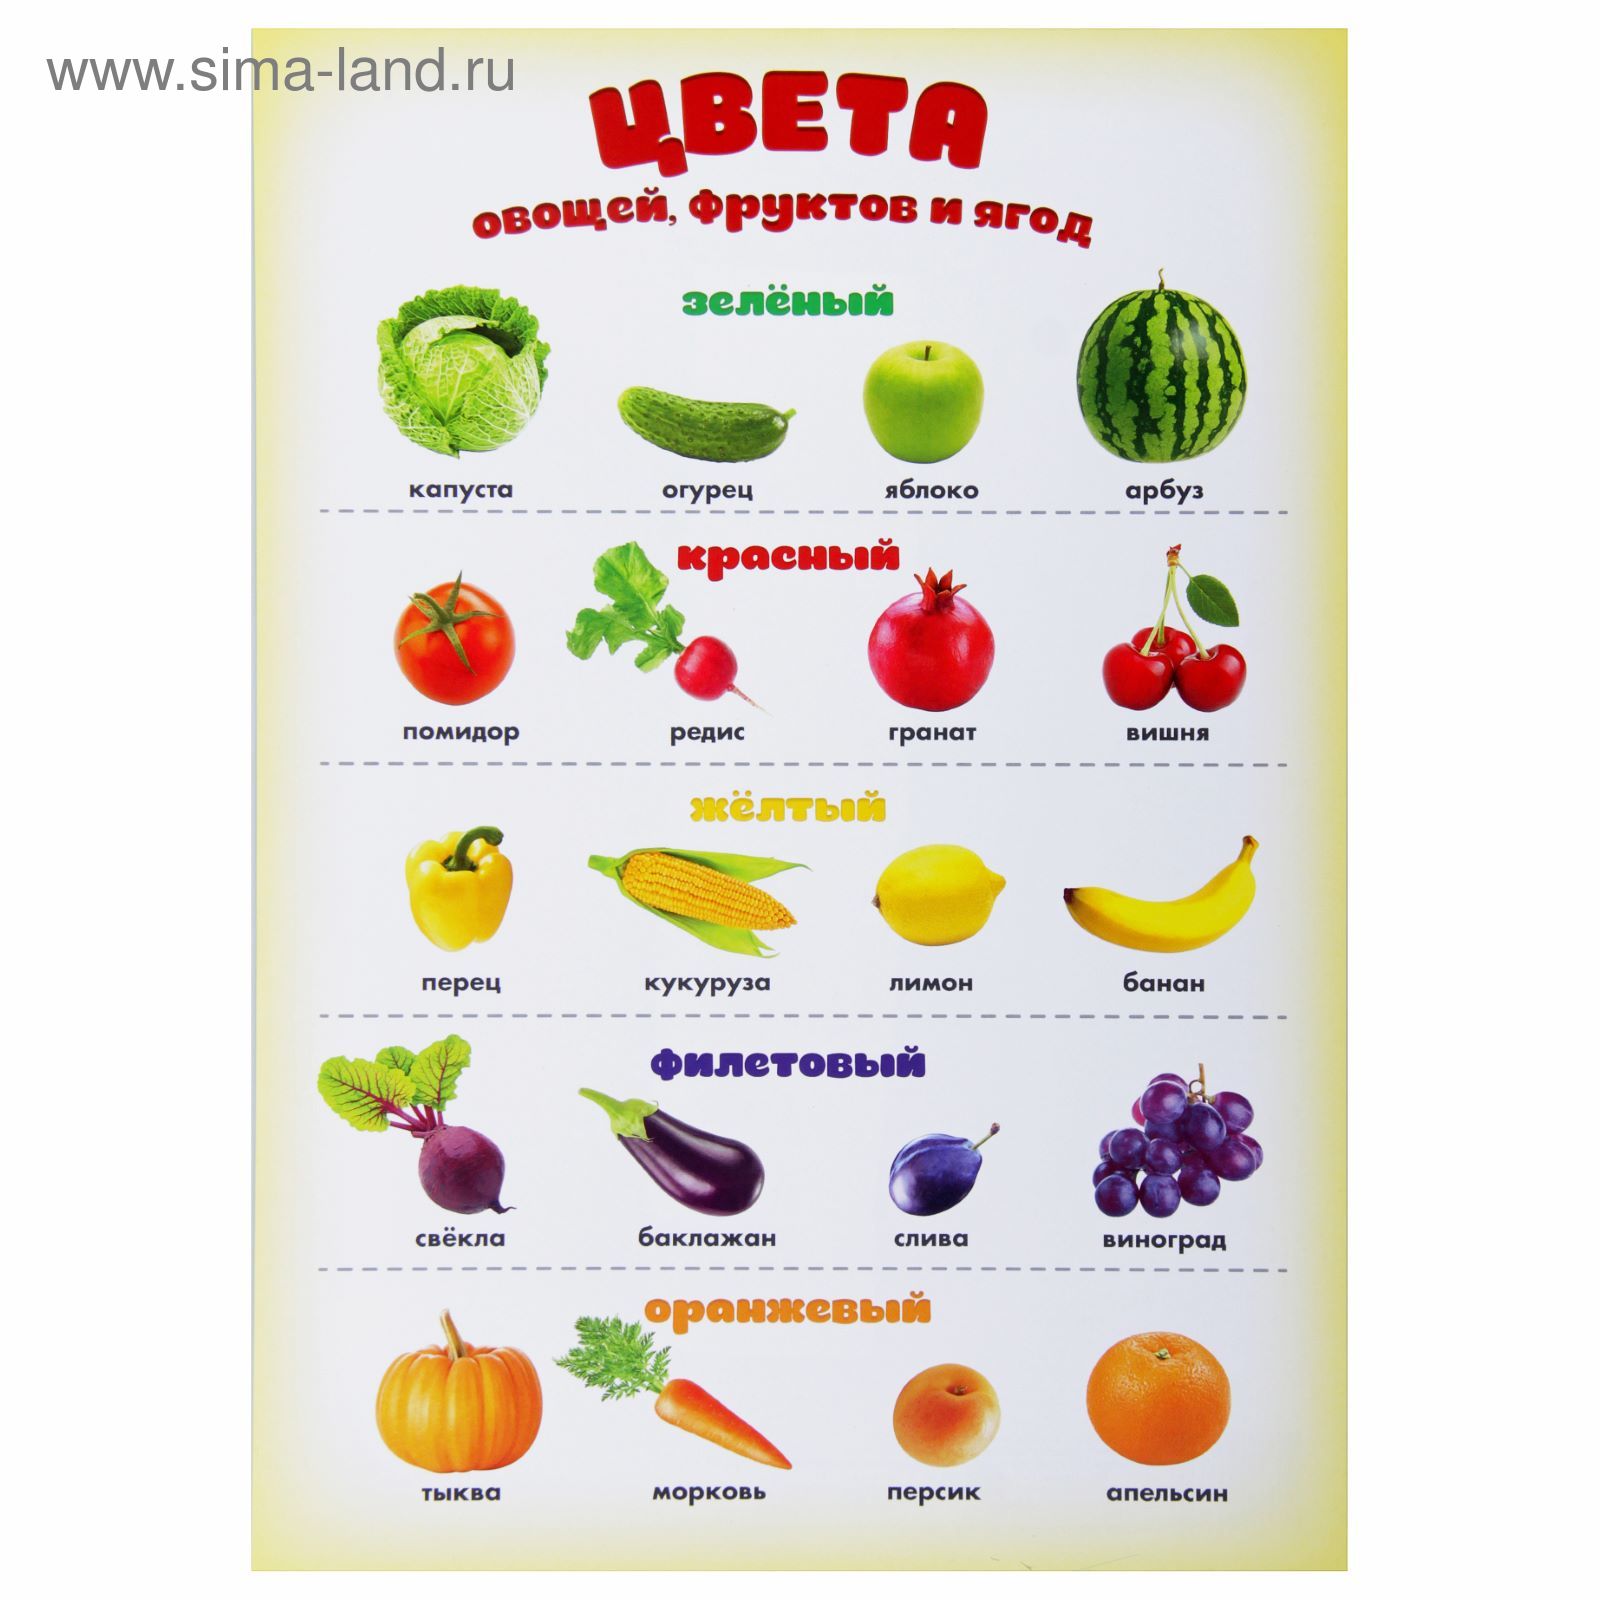 Название овощей и фруктов